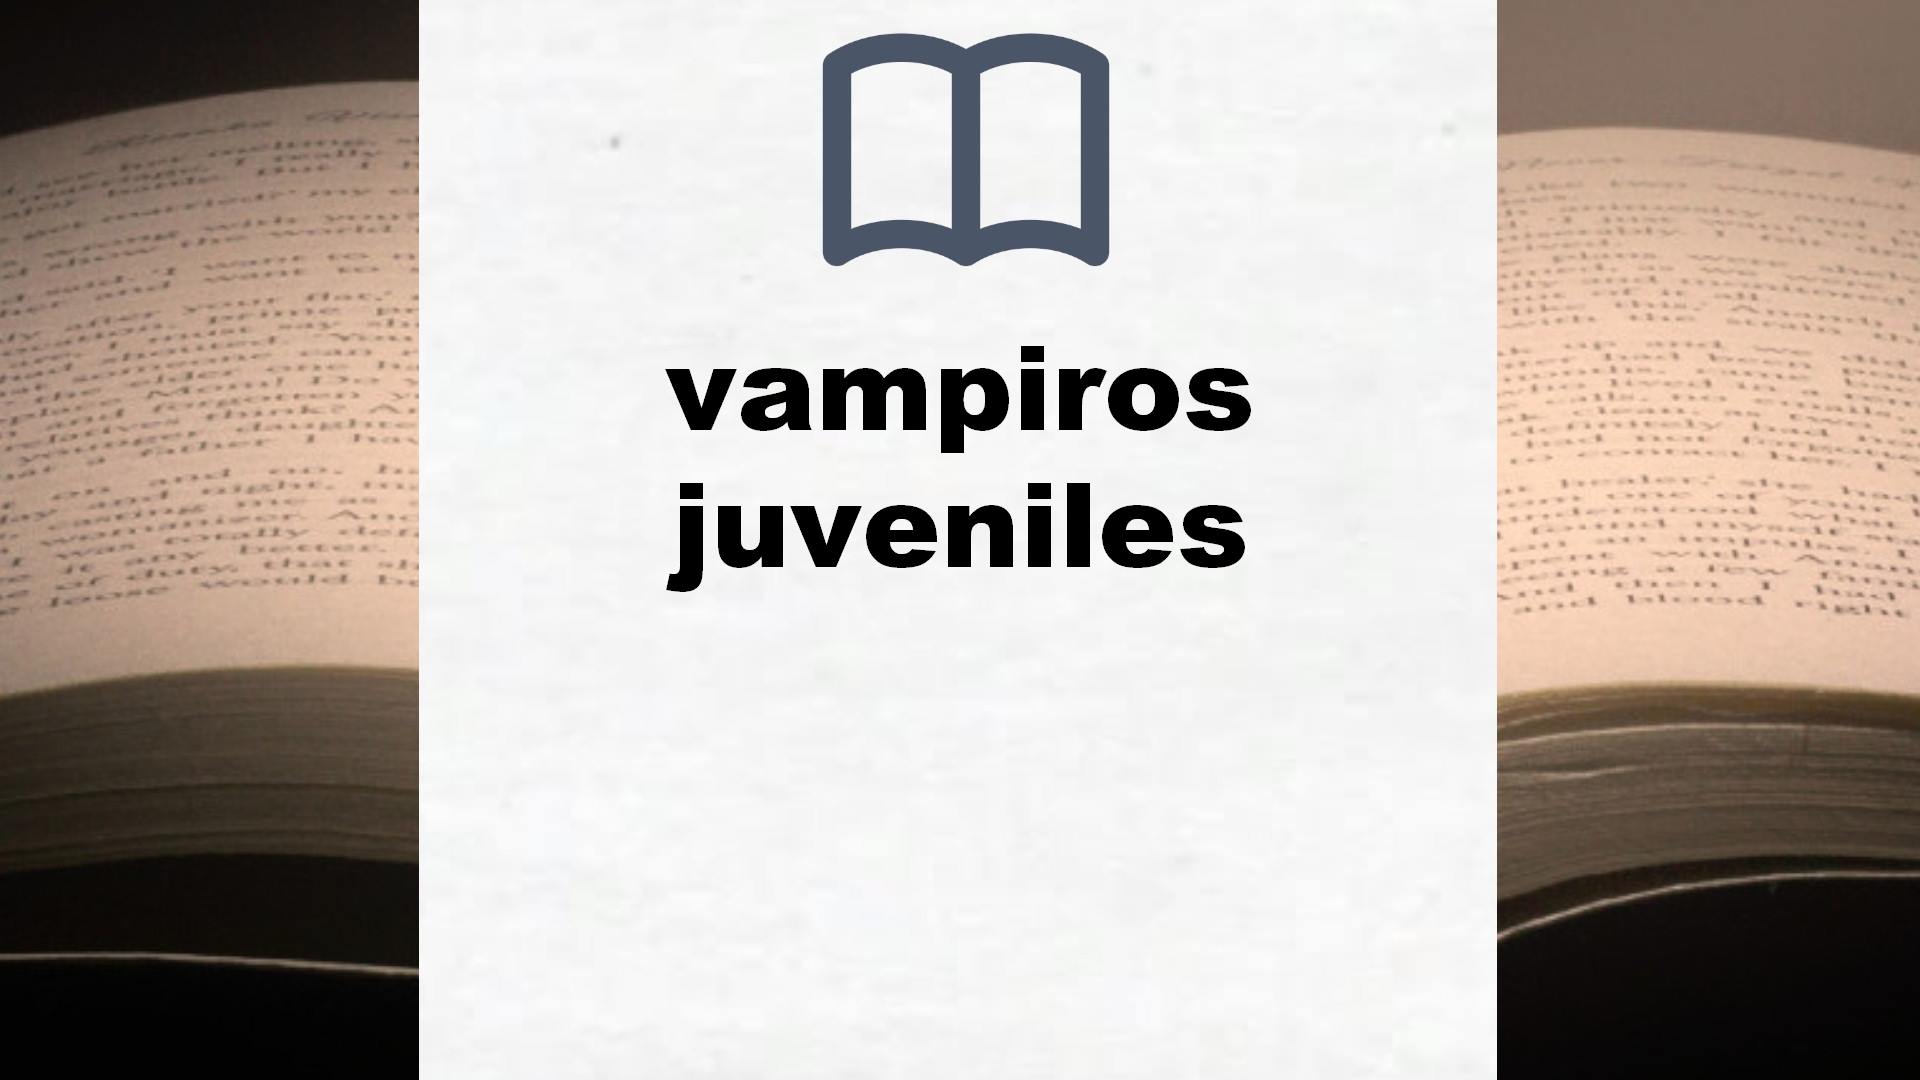 Libros sobre vampiros juveniles